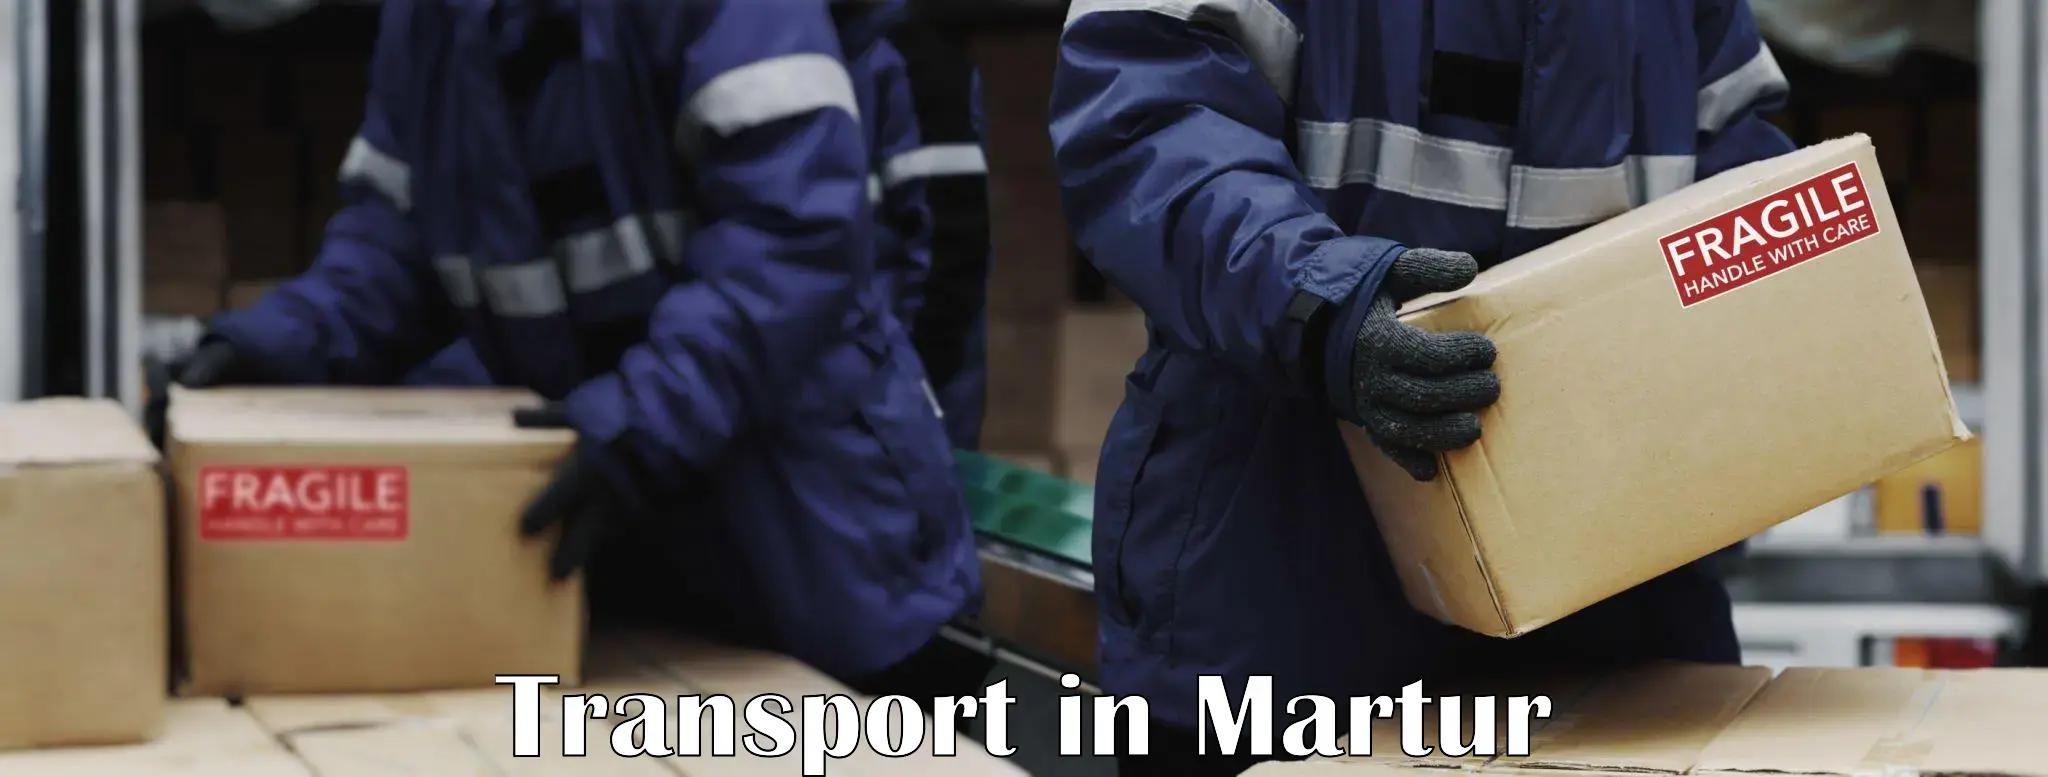 Online transport in Martur